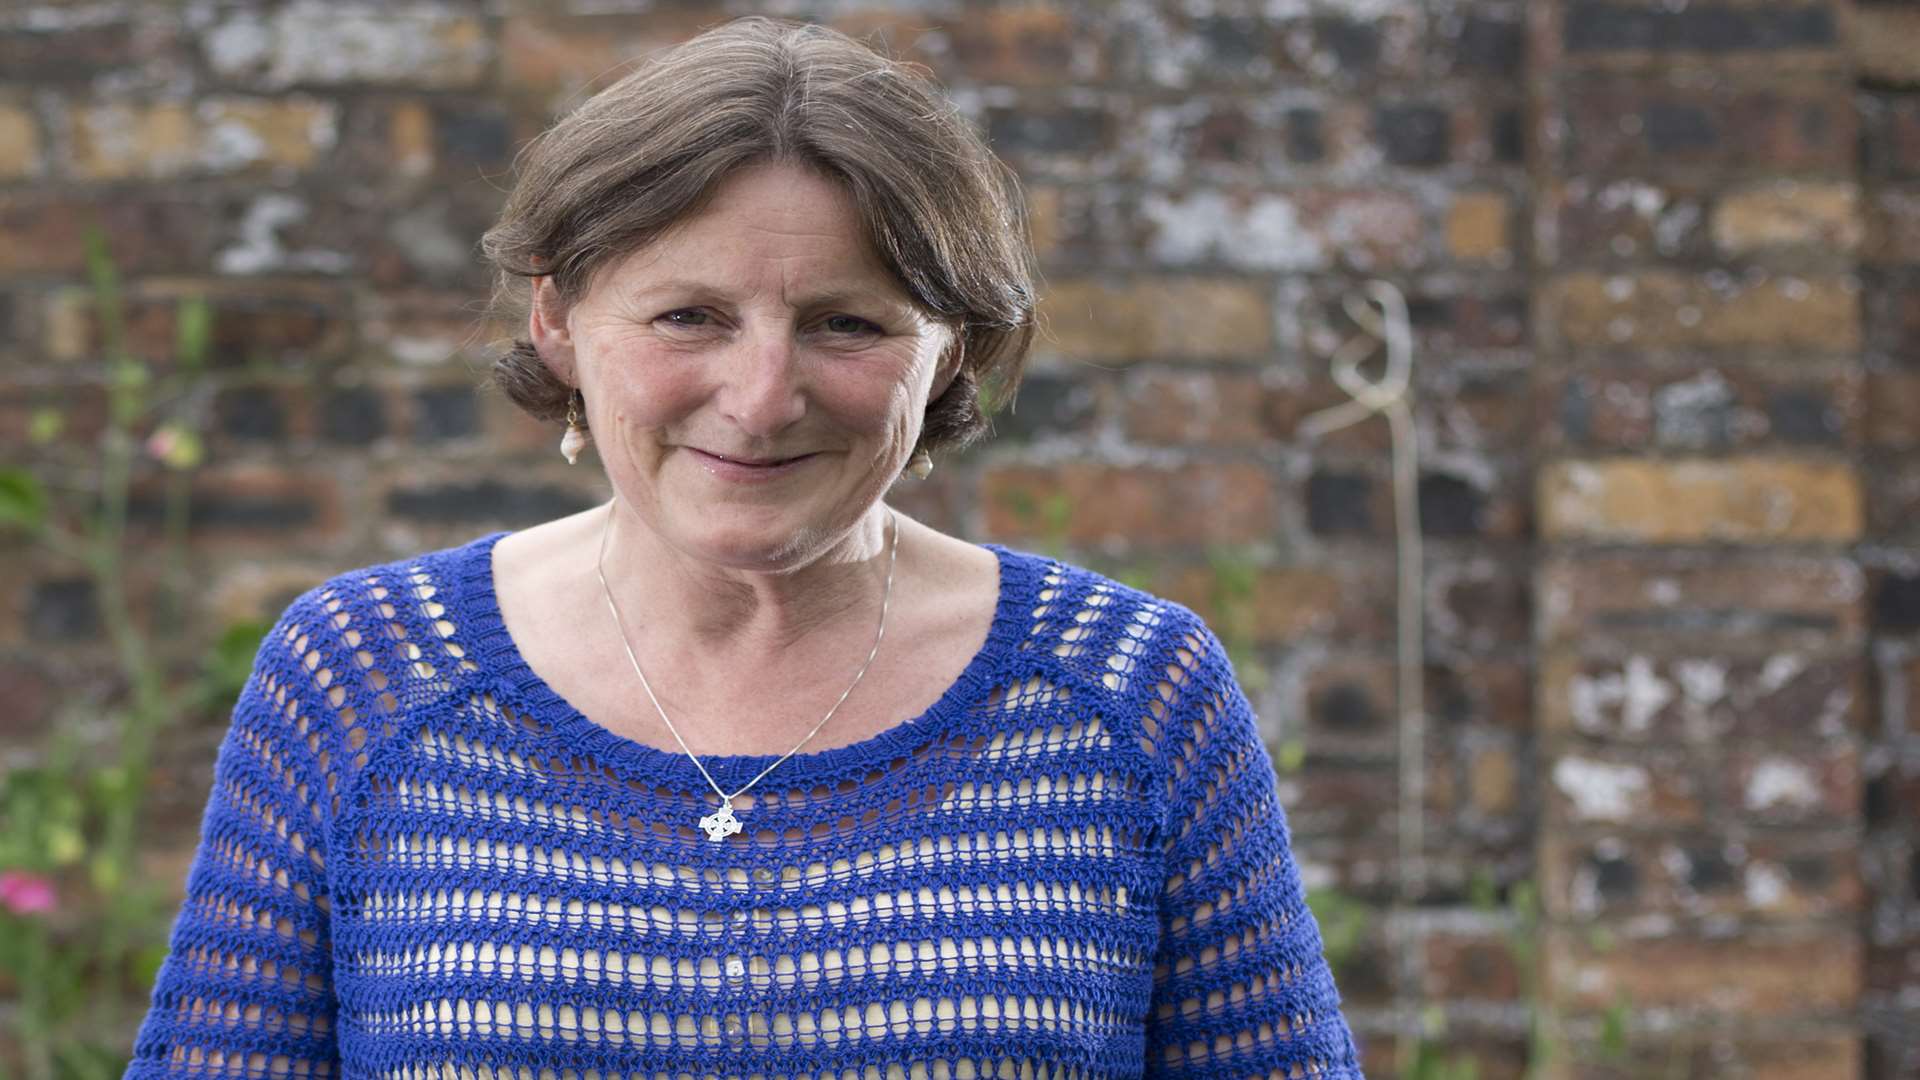 Expert forager and mum-of-six Fiona Bird